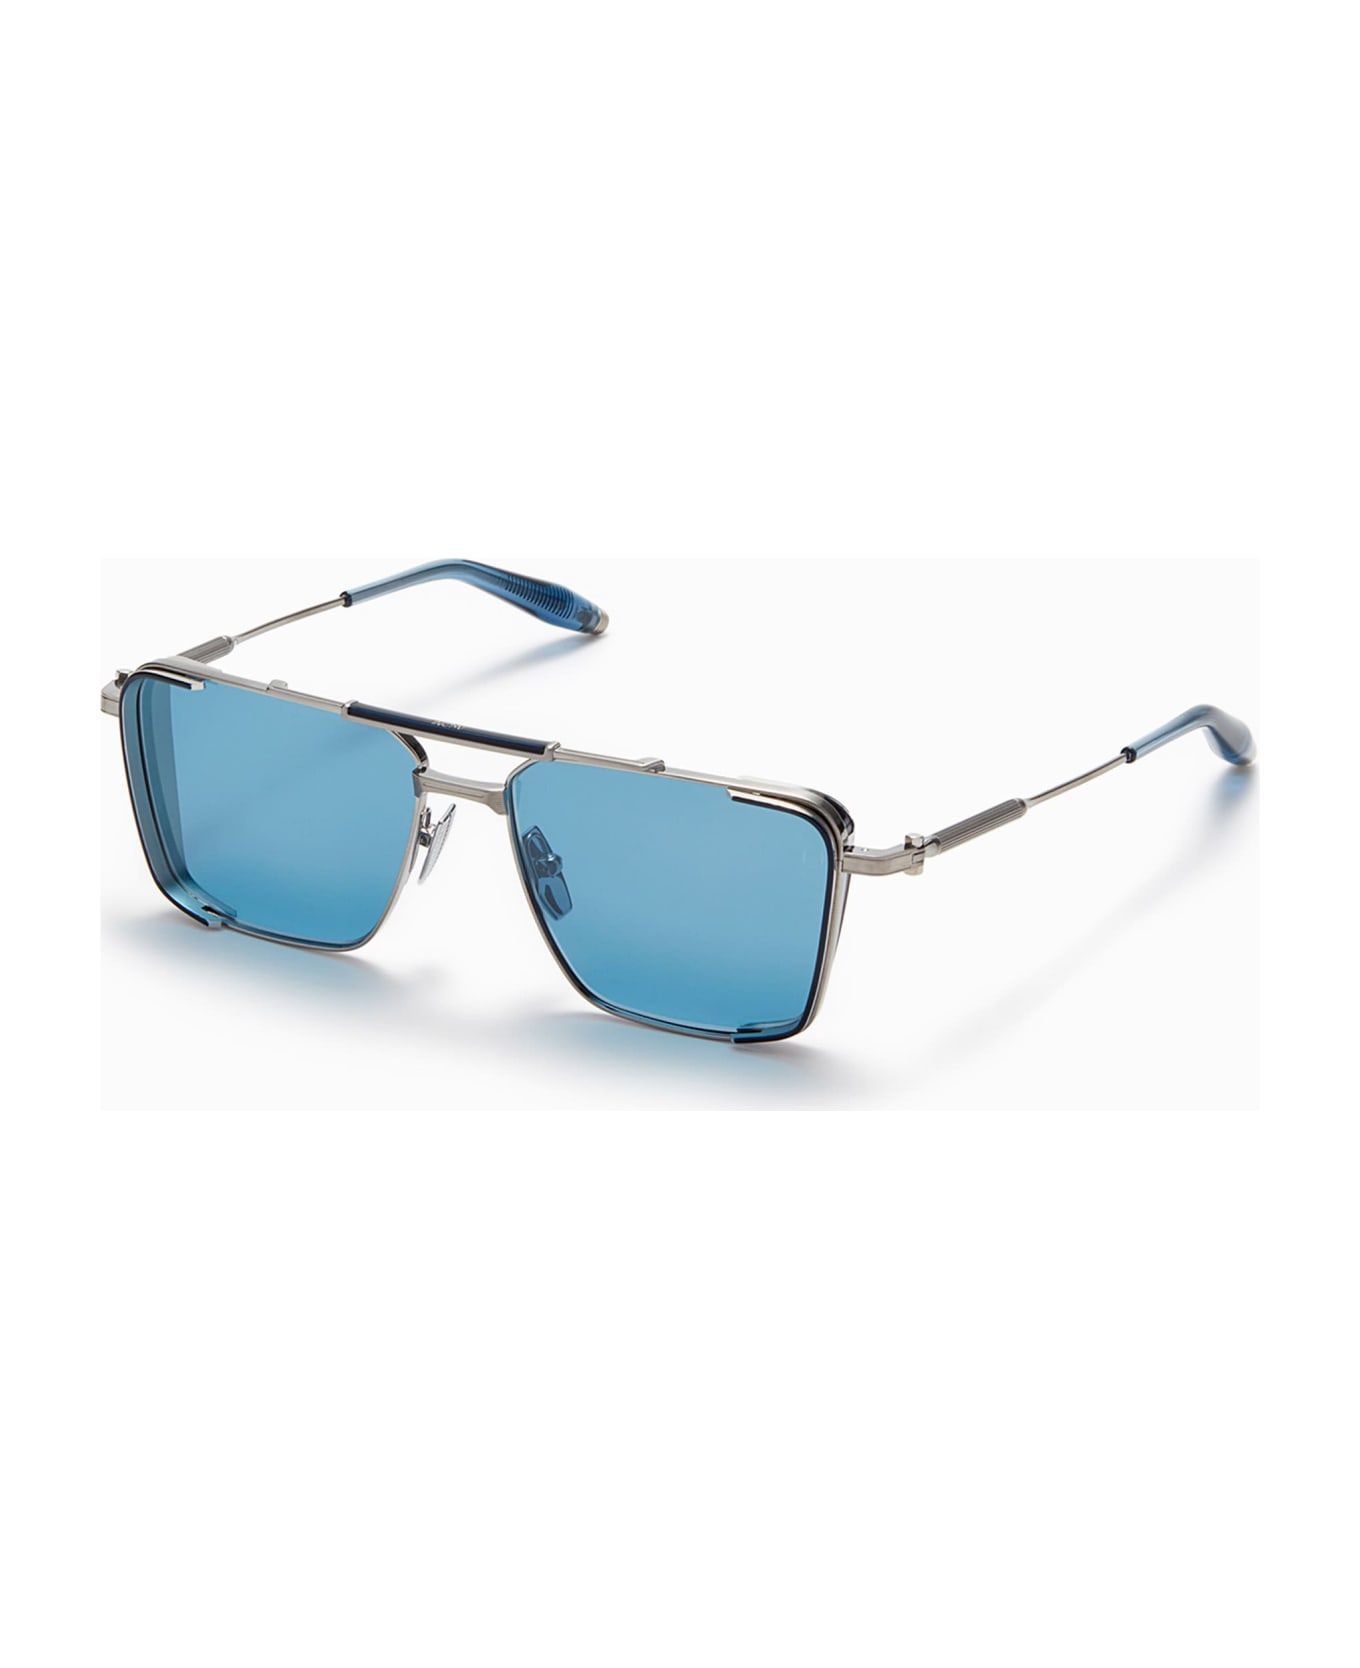 Akoni Hera - Silver / Blue Sunglasses - Silver/blue